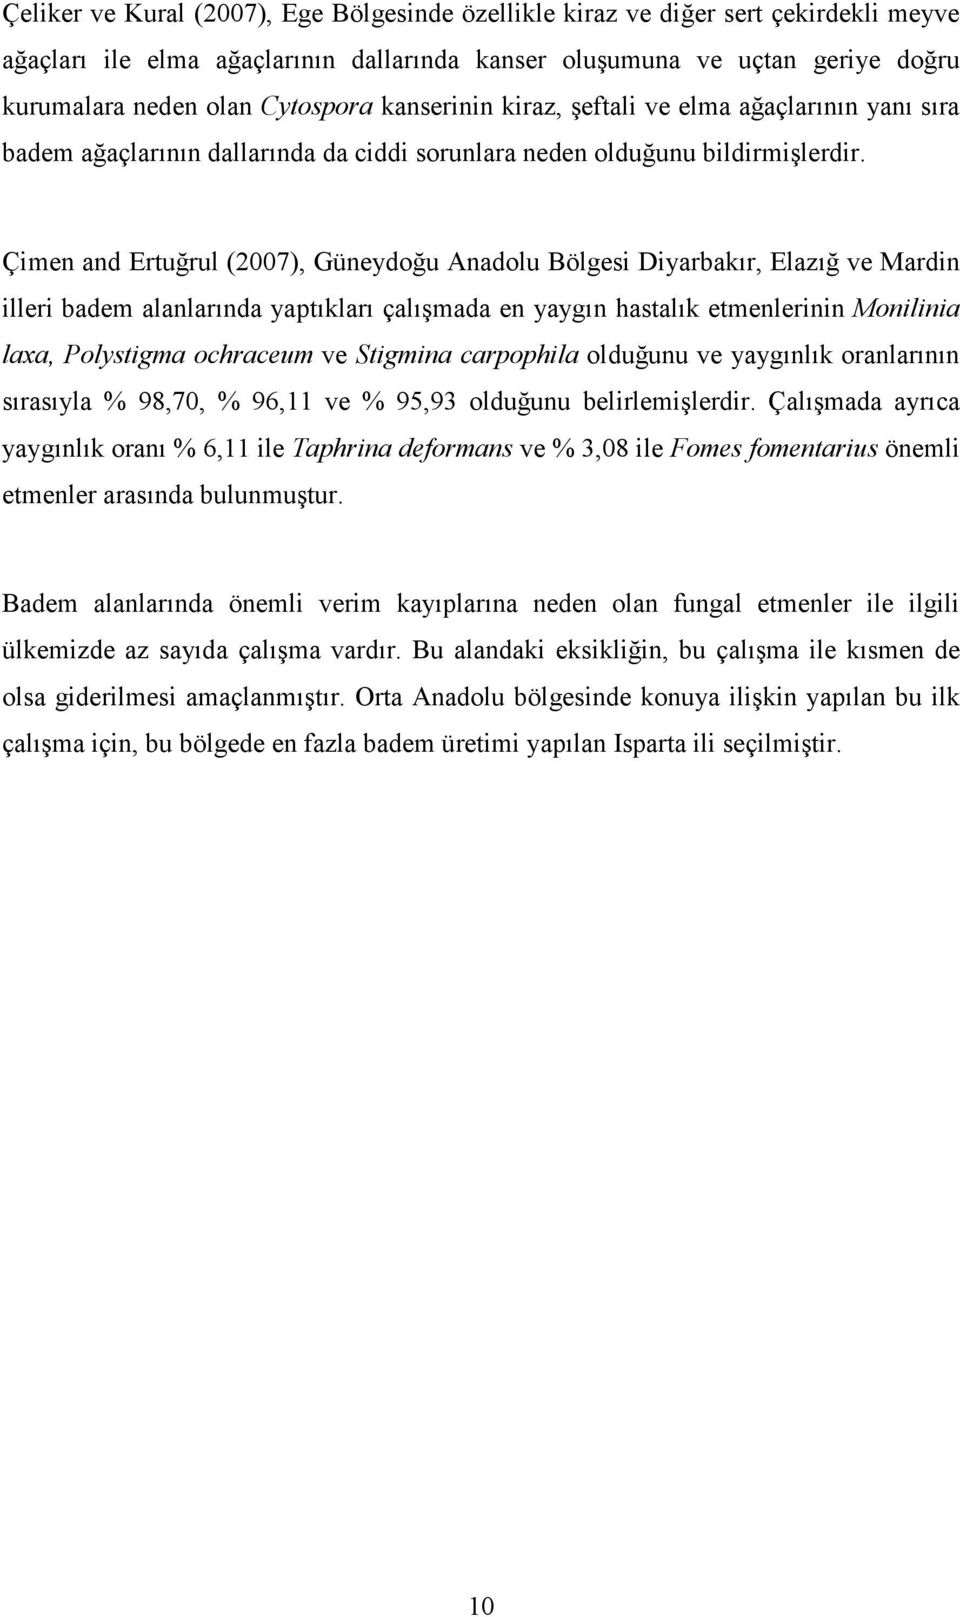 Çimen and Ertuğrul (2007), Güneydoğu Anadolu Bölgesi Diyarbakır, Elazığ ve Mardin illeri badem alanlarında yaptıkları çalışmada en yaygın hastalık etmenlerinin Monilinia laxa, Polystigma ochraceum ve